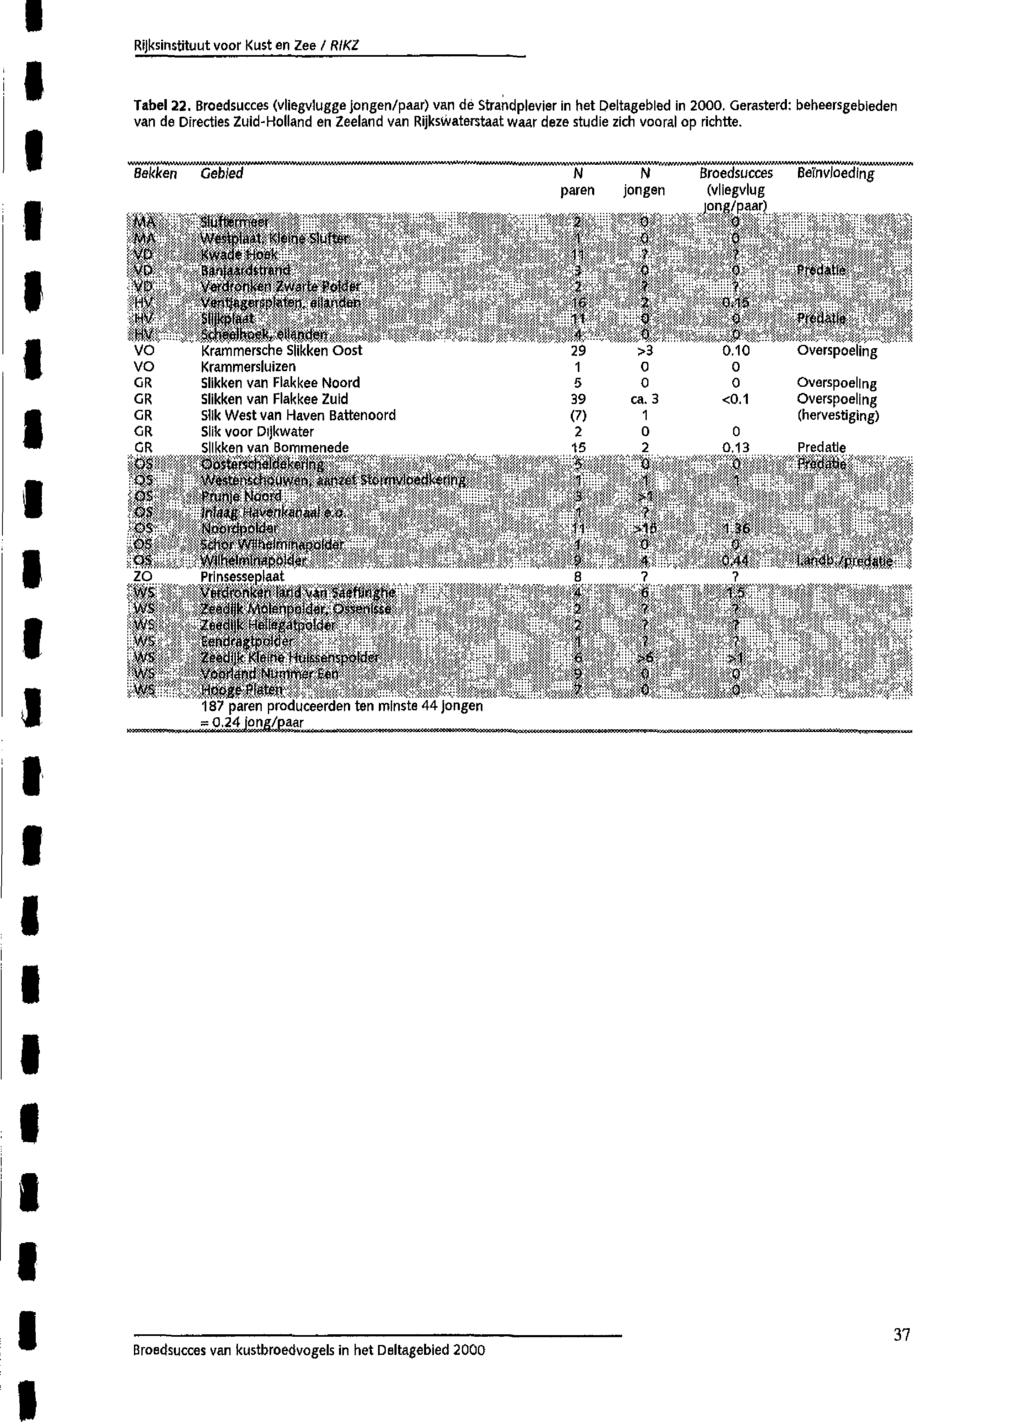 Tabel 22. Broedsucces (vliegvlugge jongen/paar) van dé Strandplevier in het Deltagebied in 2000.